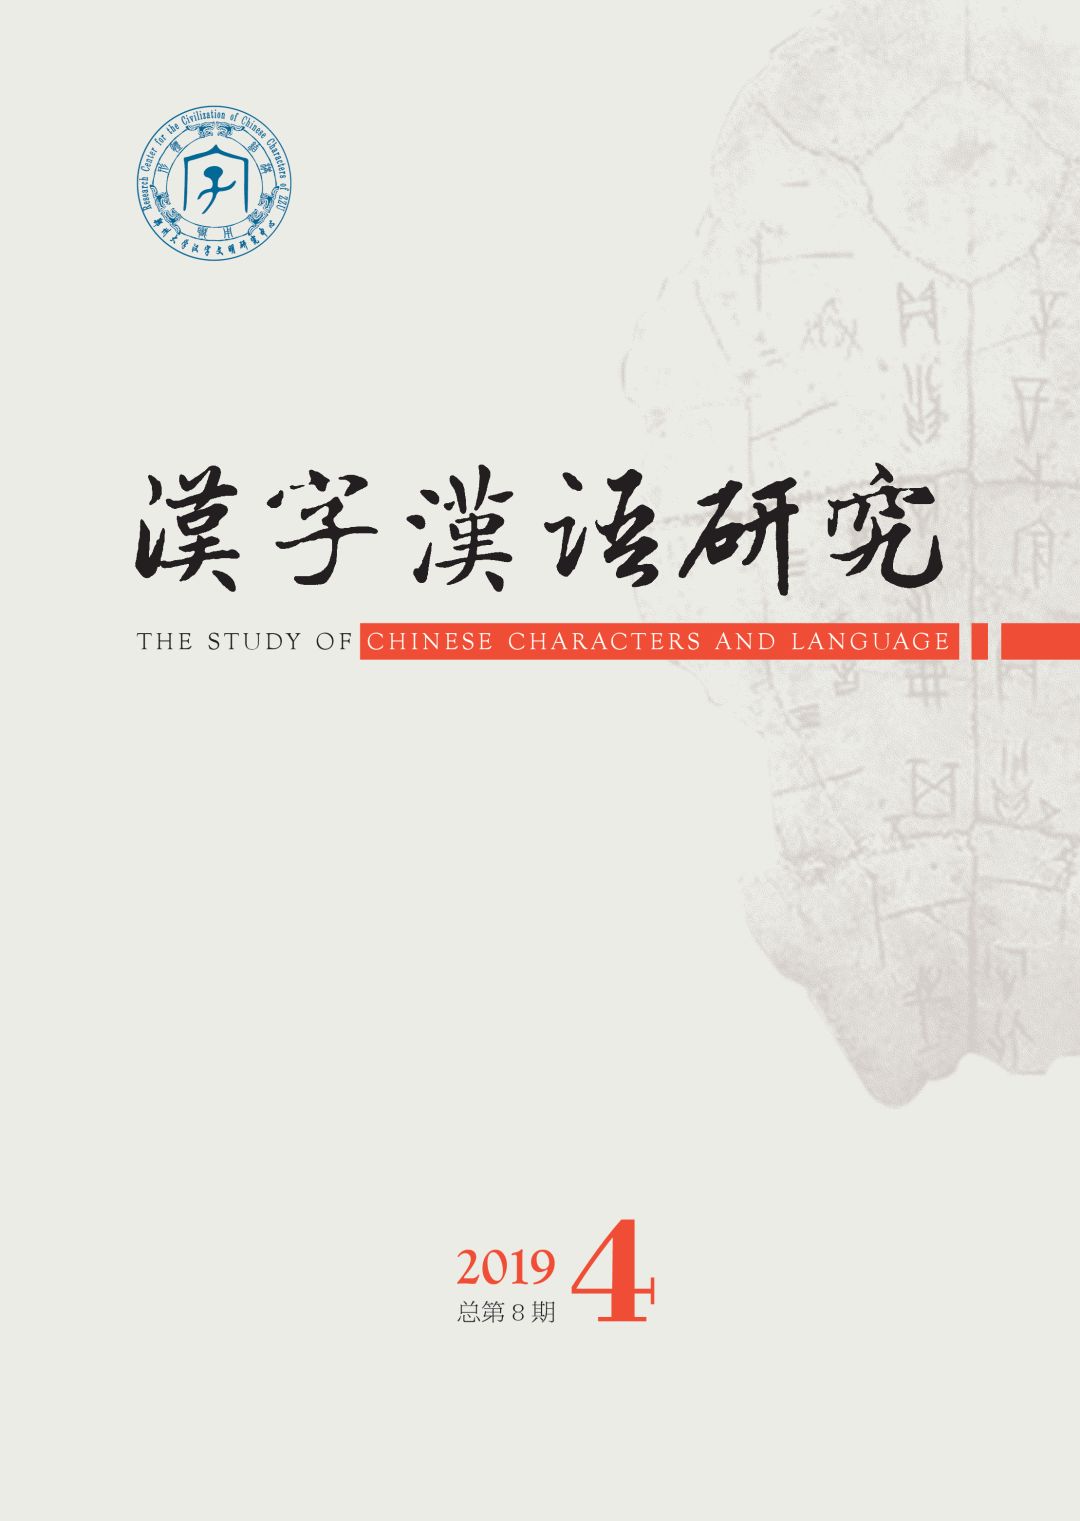 汉字汉语研究 2019年第4期出版 自由微信 Freewechat